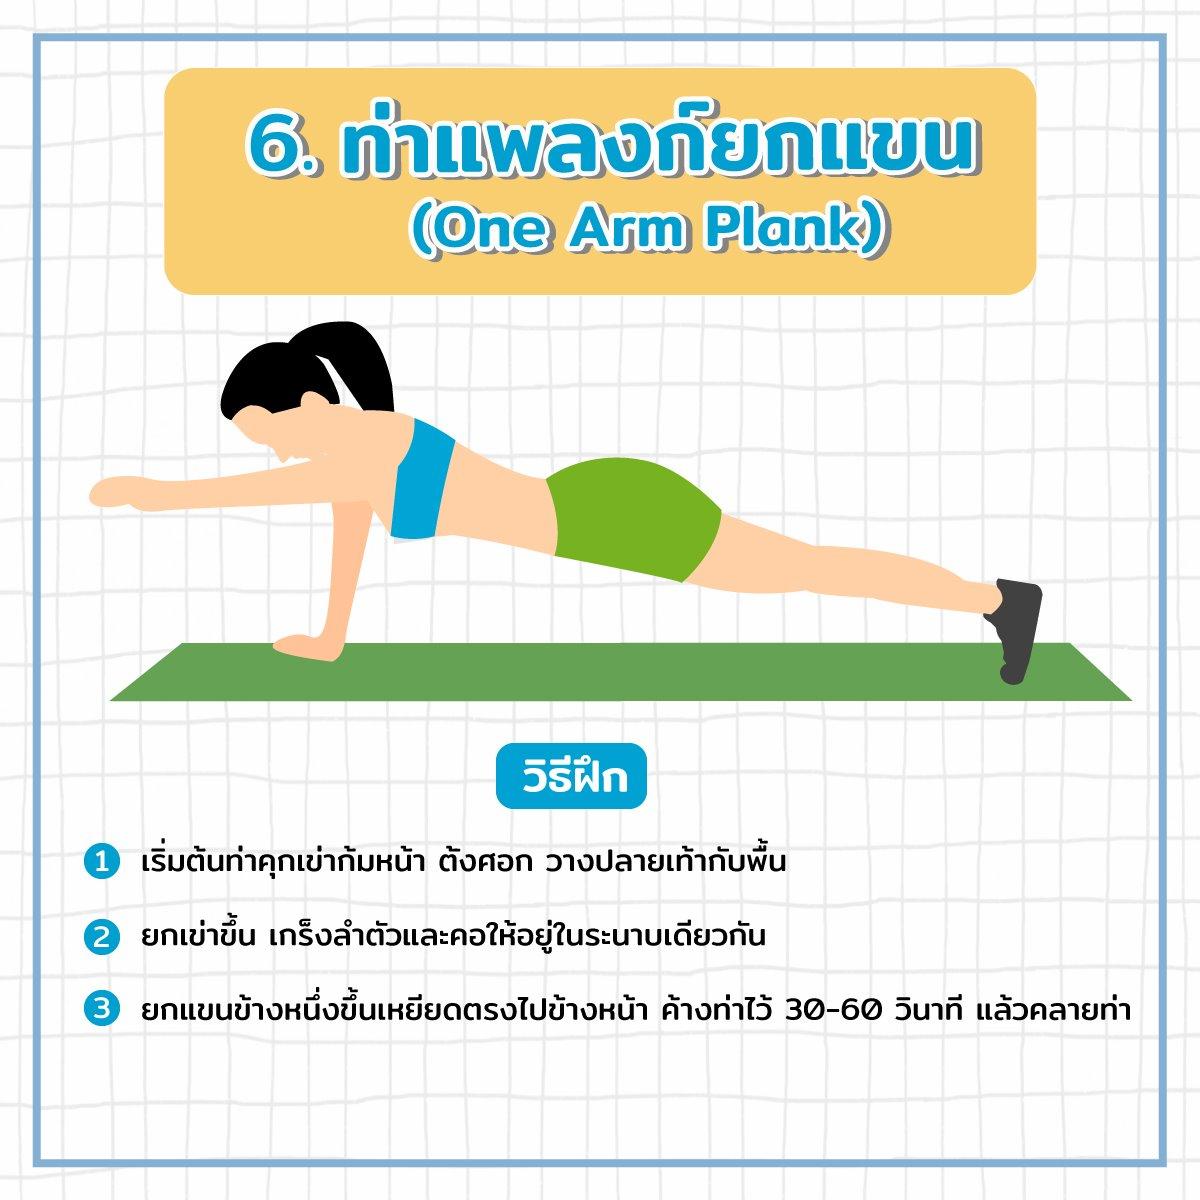 ท่าแพลงก์ยกแขน (One Arm Plank)